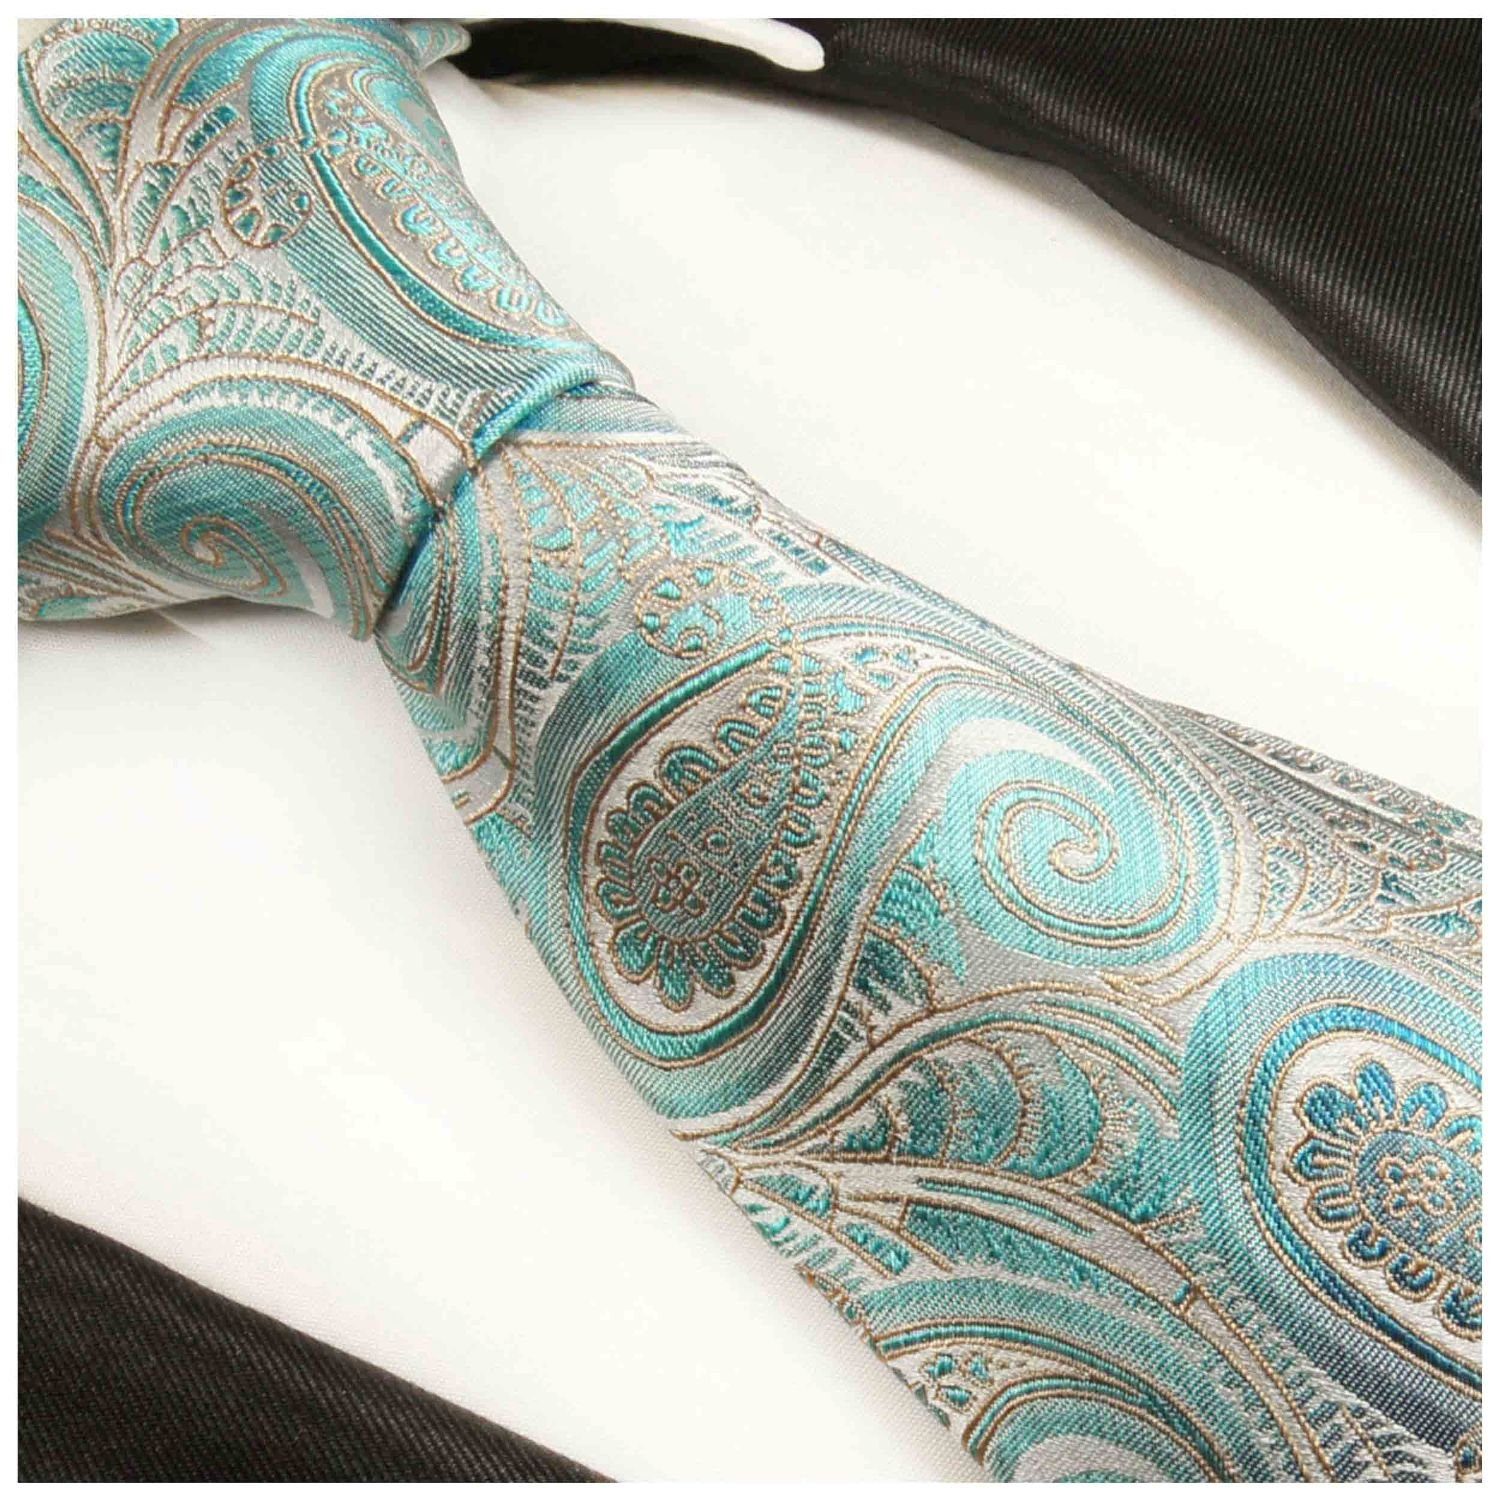 Paul Malone (6cm), Herren 2016 100% Schmal türkis Seide paisley Schlips Seidenkrawatte brokat Krawatte Elegante